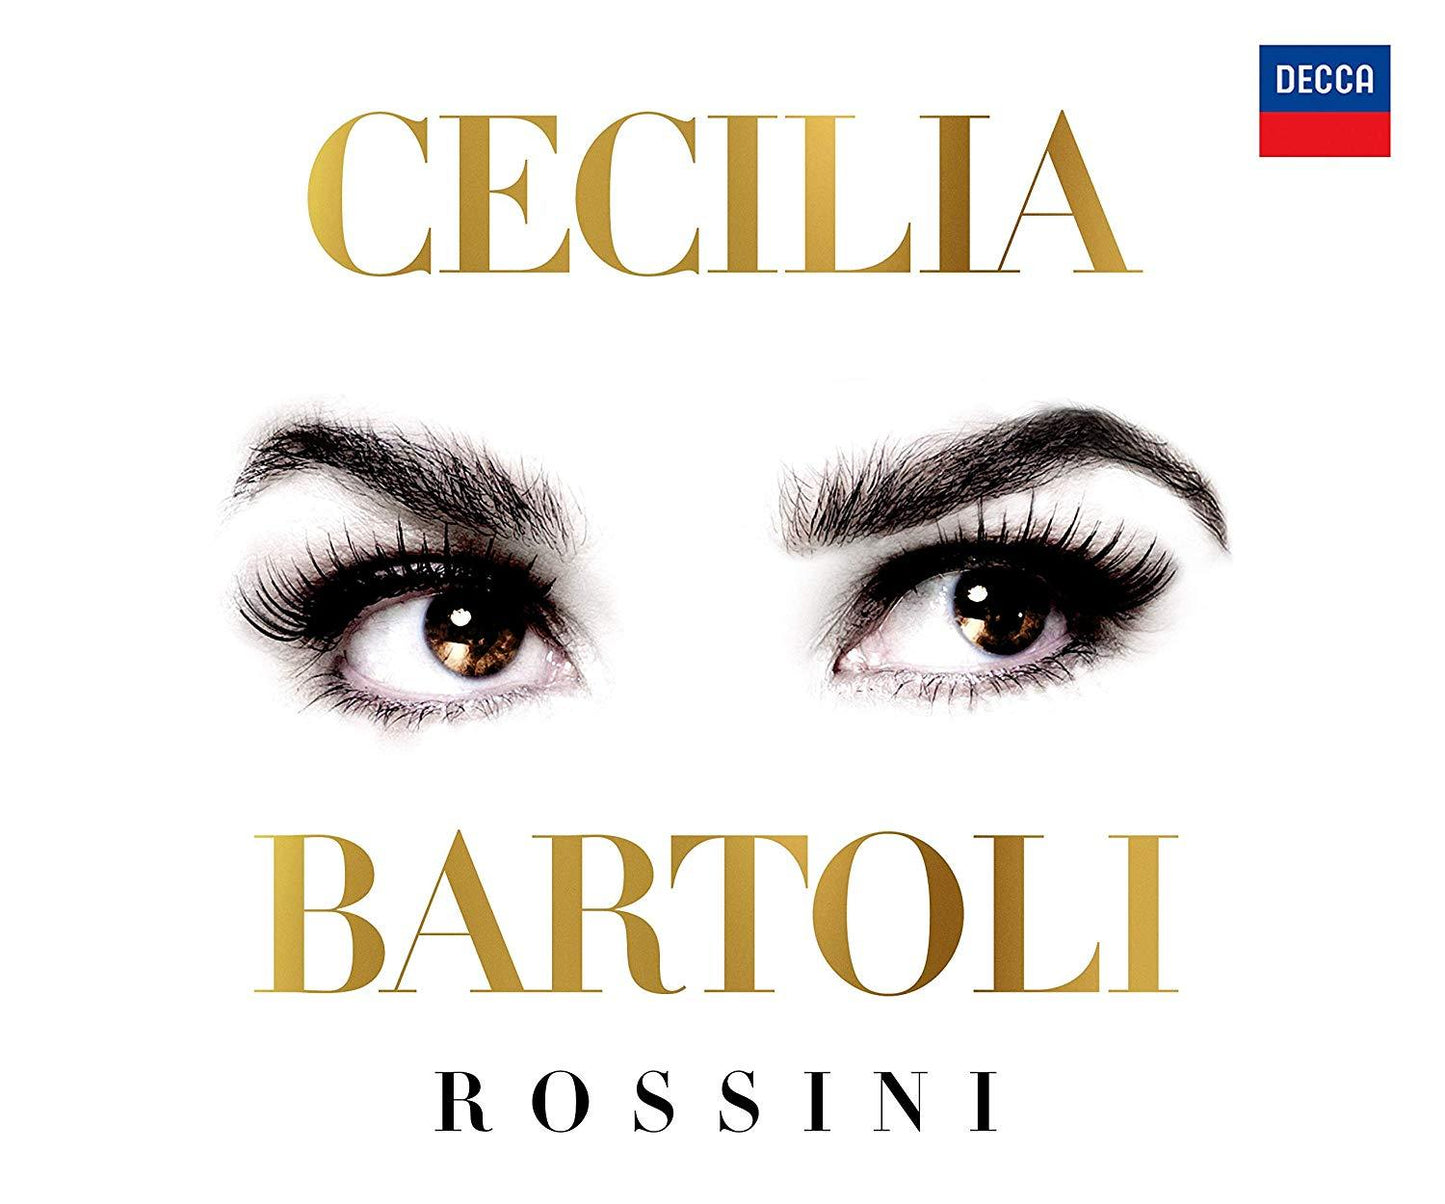 ROSSINI EDITION - CECILIA BARTOLI (15 CDS + 6 DVDS)